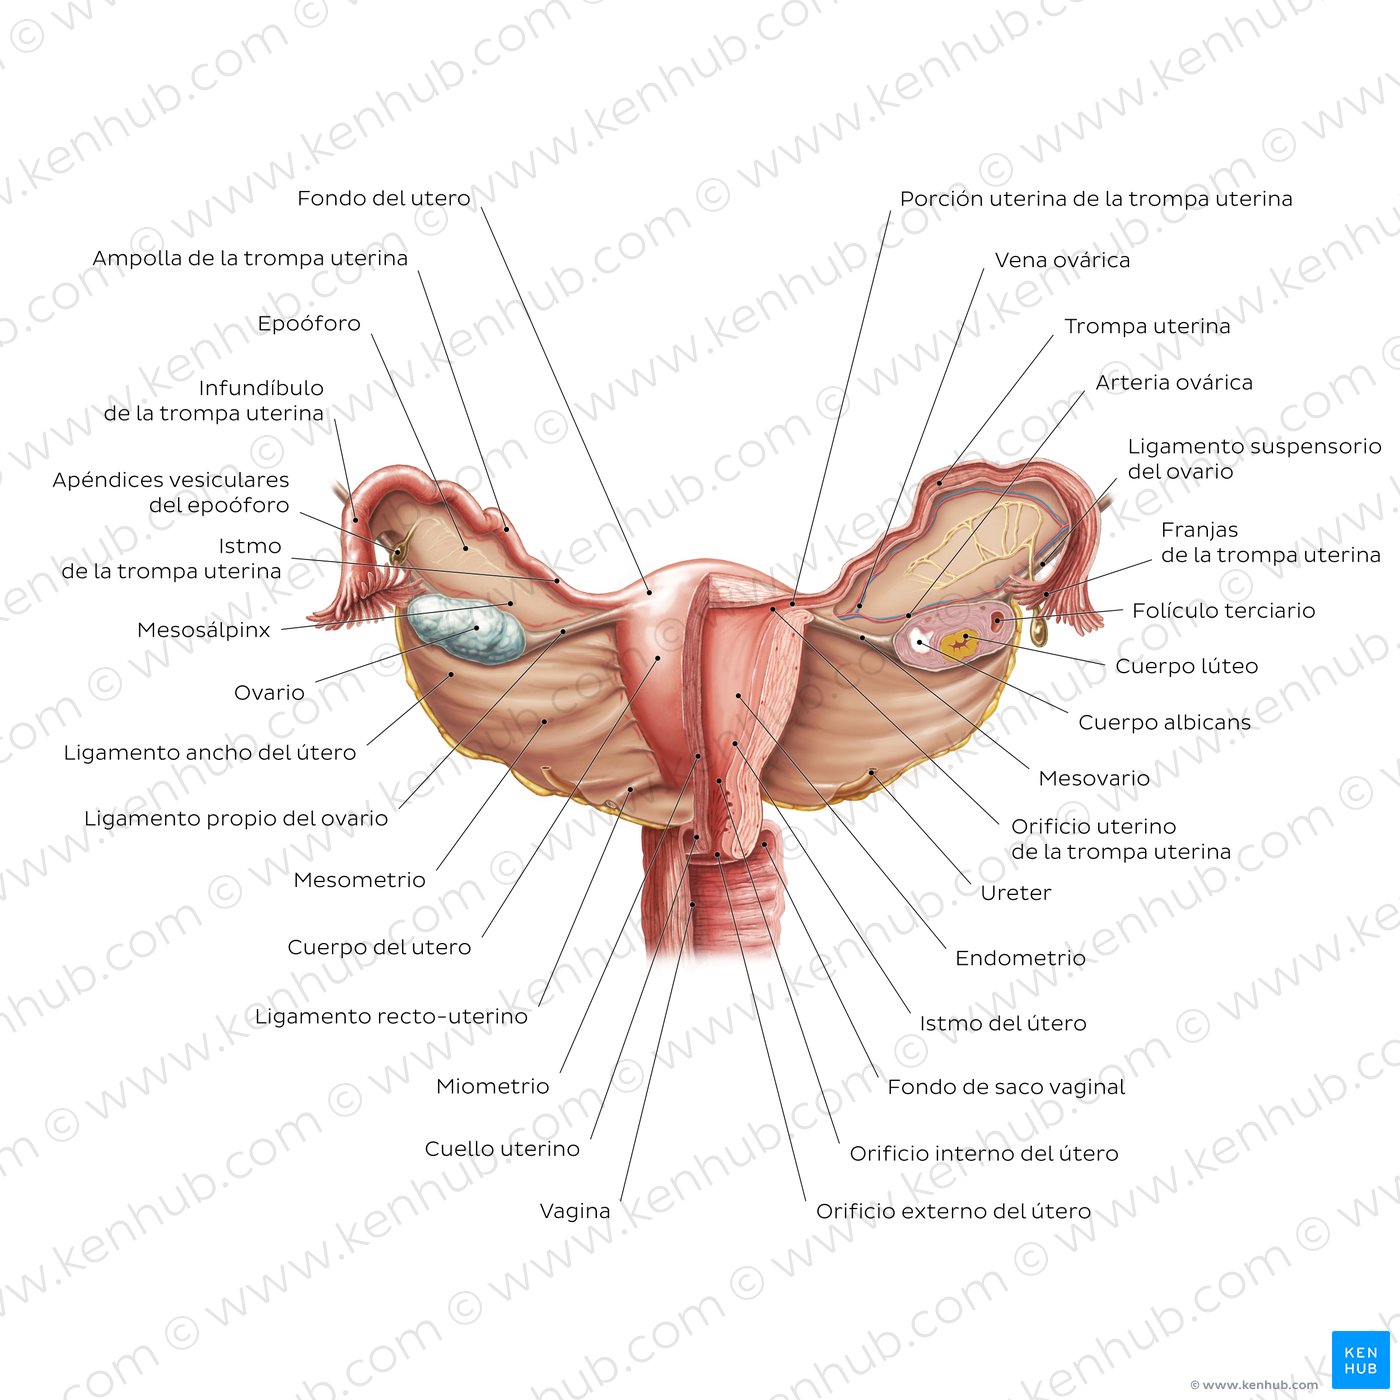 VIsión general del útero y ovarios (perspectiva anterior)